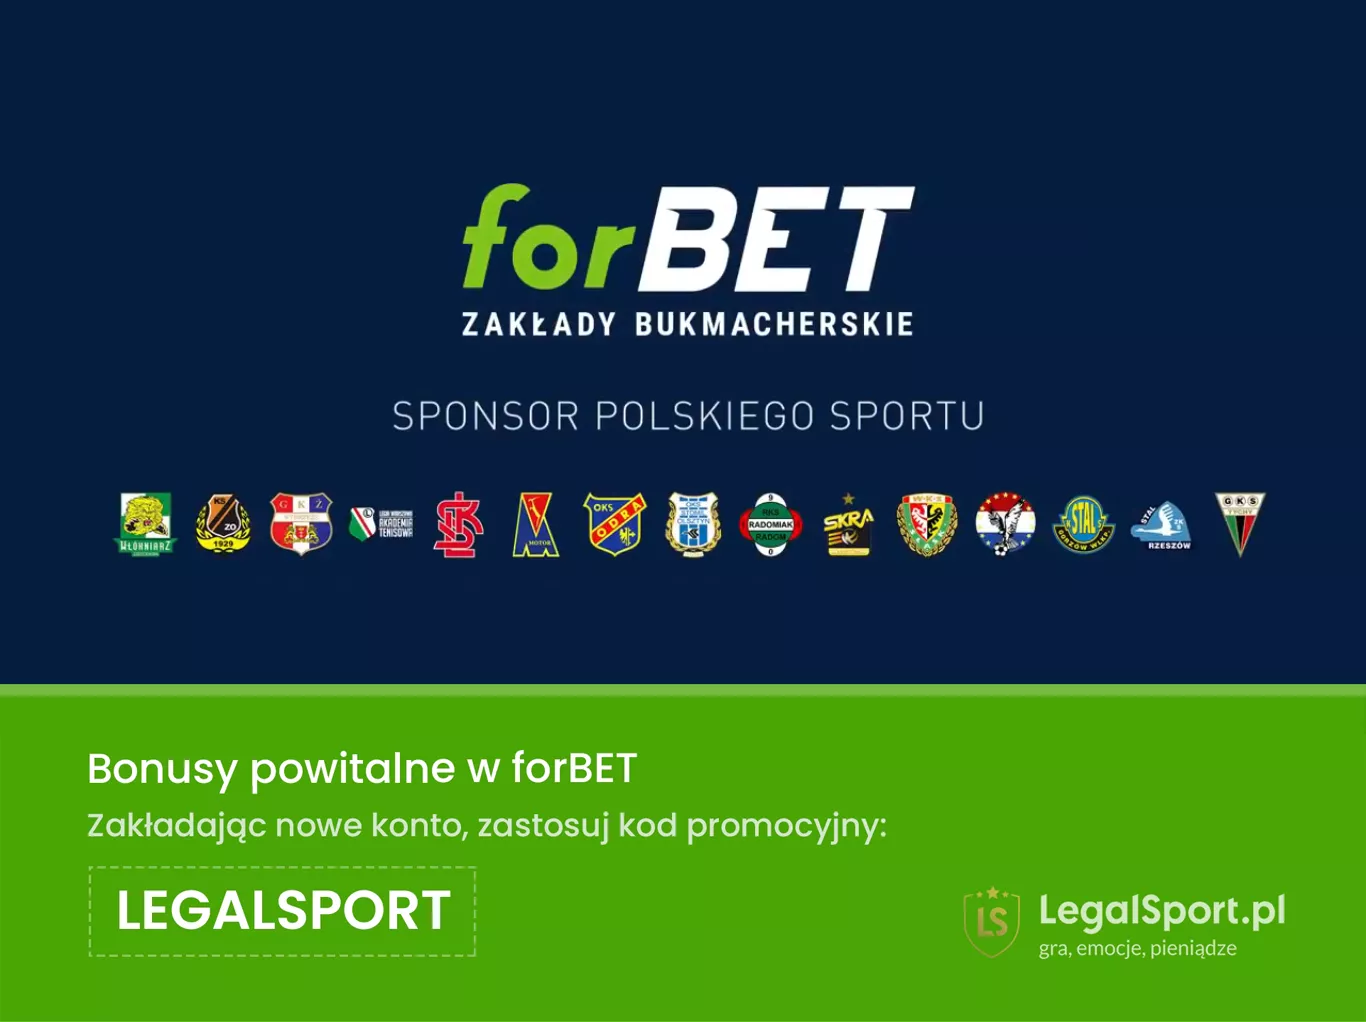 Legalne zakłady bukmacherskie forBET - sponsor polskiego sportu